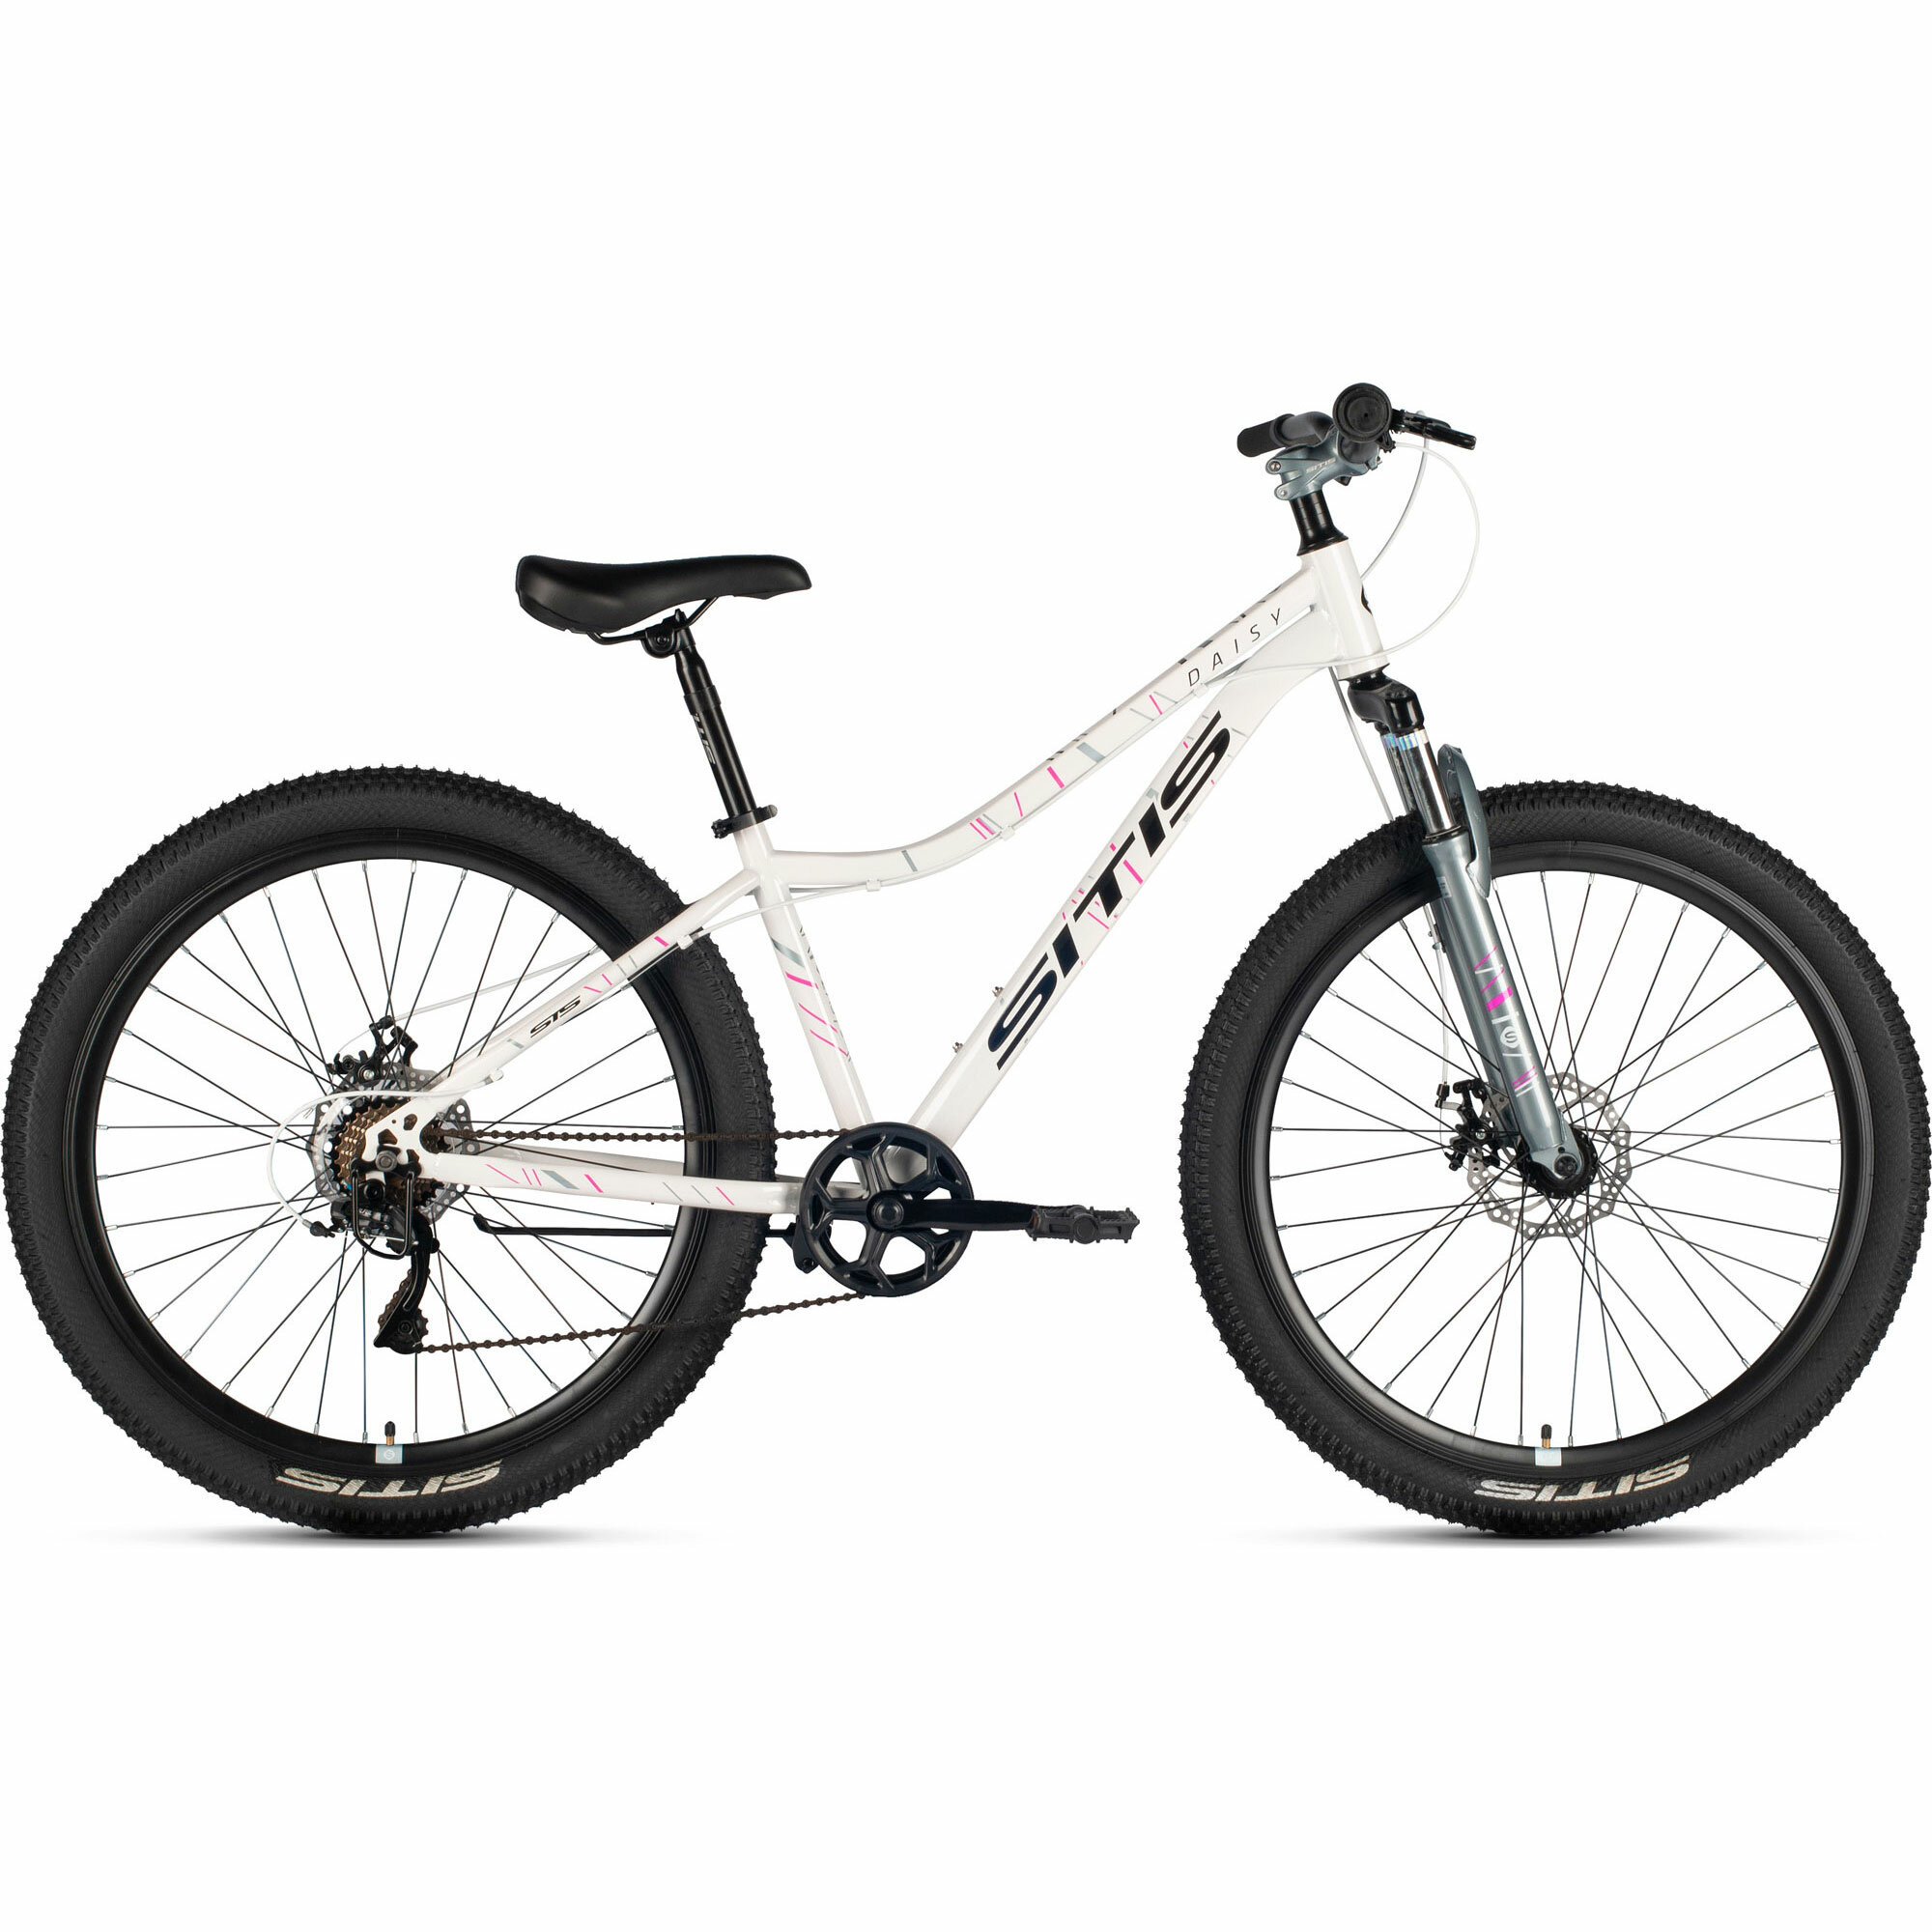 Велосипед горный SITIS DAISY 27,5" 7sp (2024), хардтейл, взрослый, женский, стальная рама, 7 скорости, дисковые механические тормоза, цвет White-Grey-Black, белый/серый/черный цвет, размер рамы 15", для роста 160-170 см